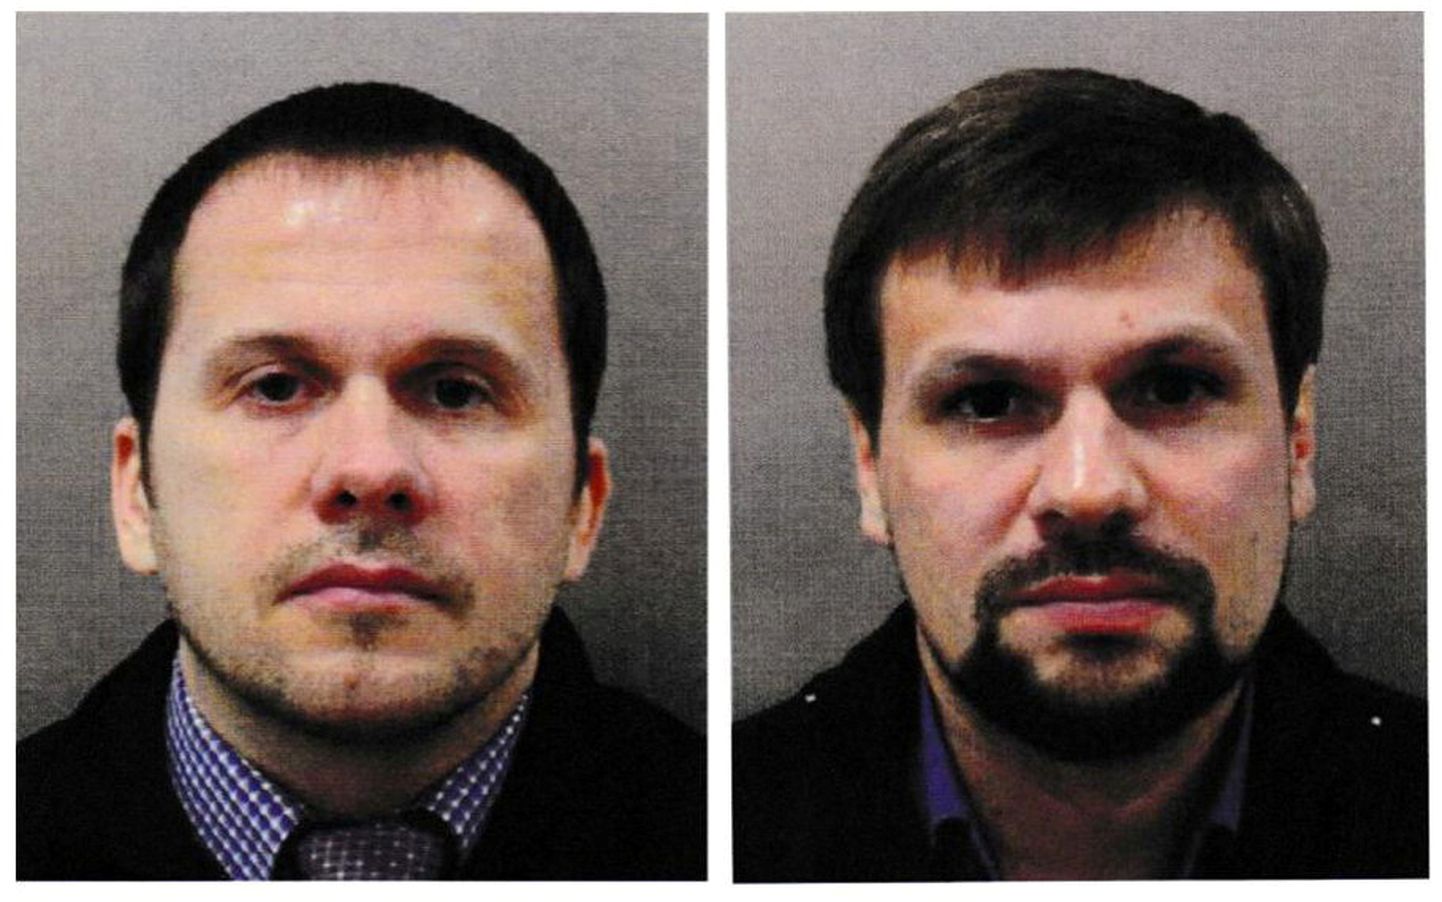 Агенты российской разведки ГРУ Александр Мишкин и Анатолий Чепига, известные как Александр Петров и Руслан Боширов.